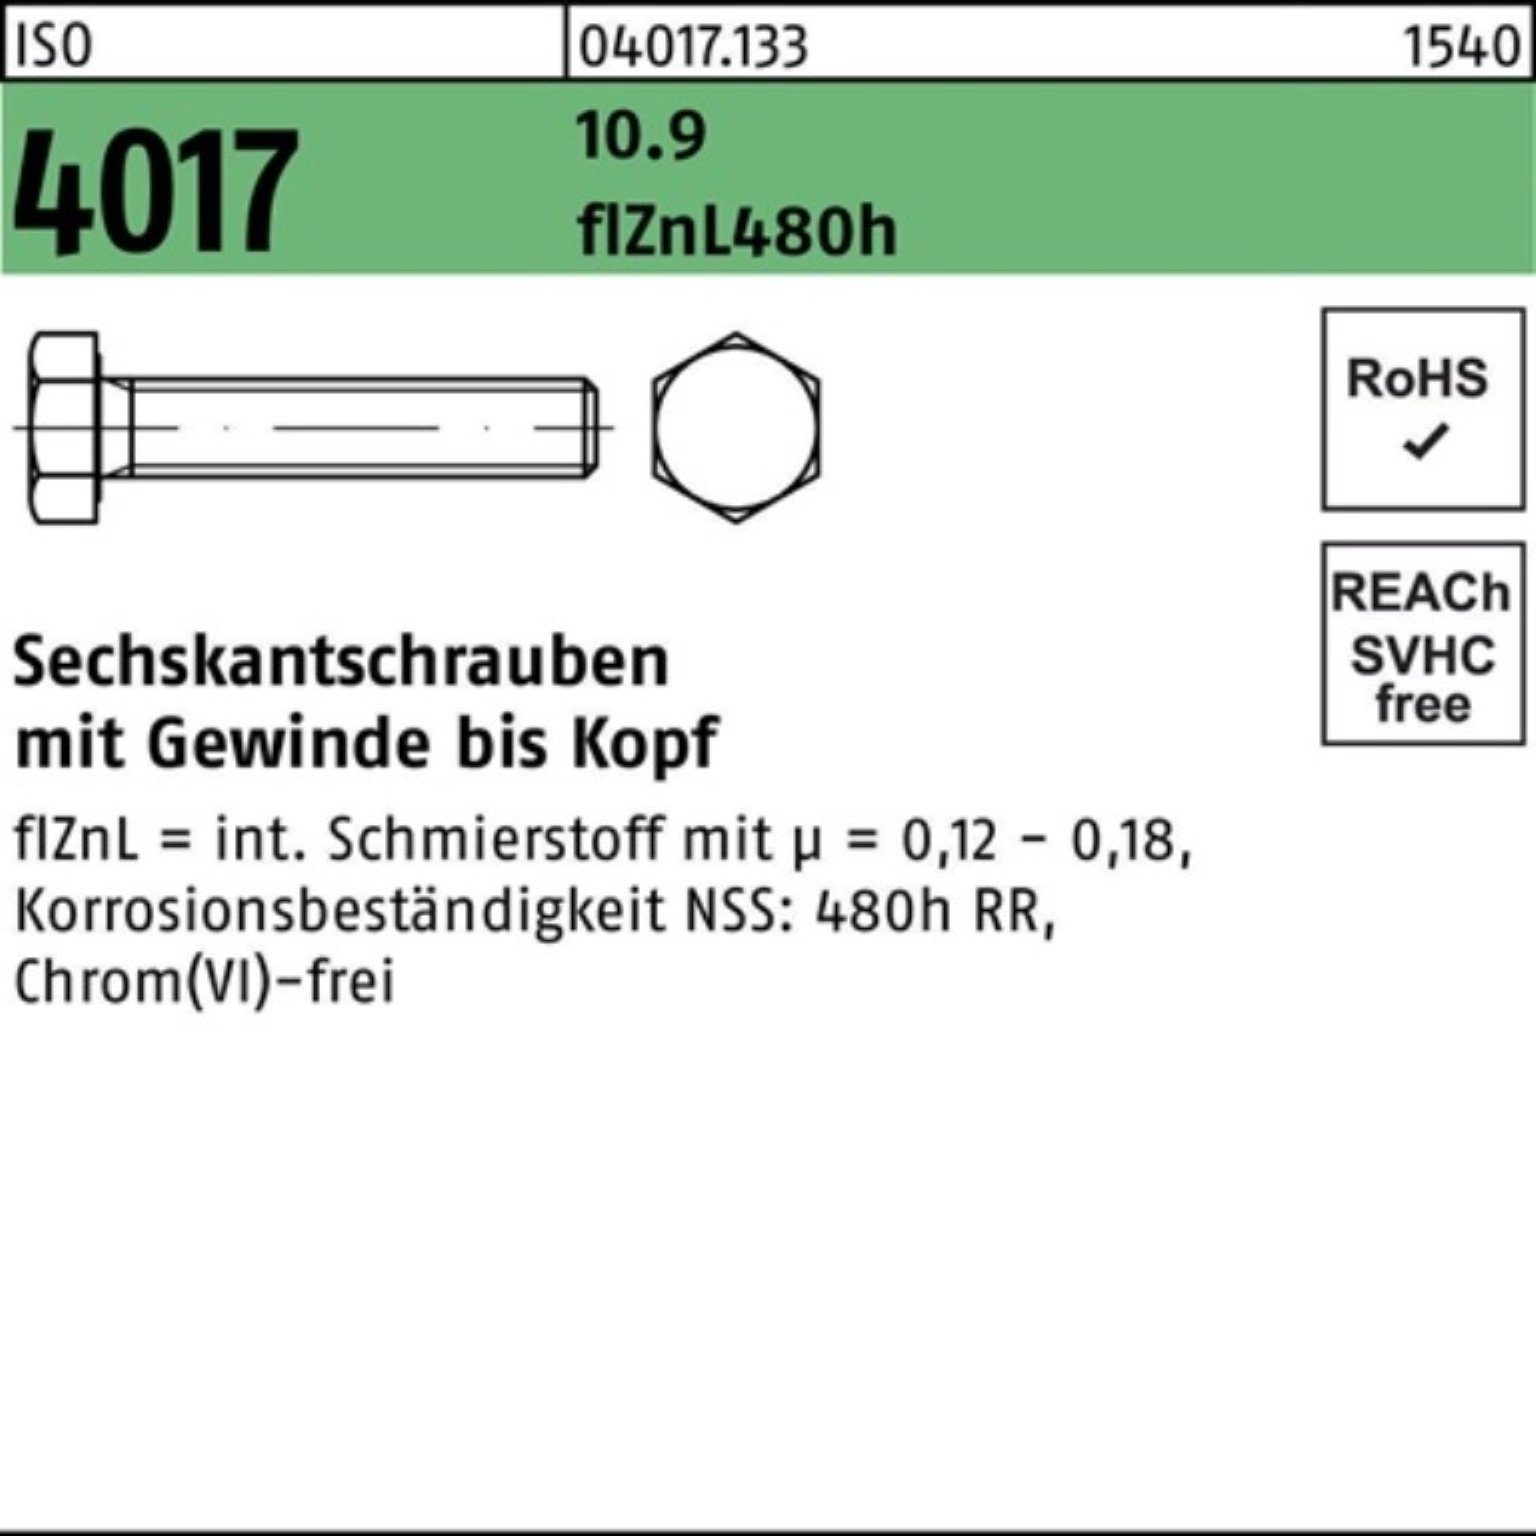 ISO Pack VG 2 Bufab Sechskantschraube 10.9 zinklamellenb. 100er 4017 90 M16x Sechskantschraube